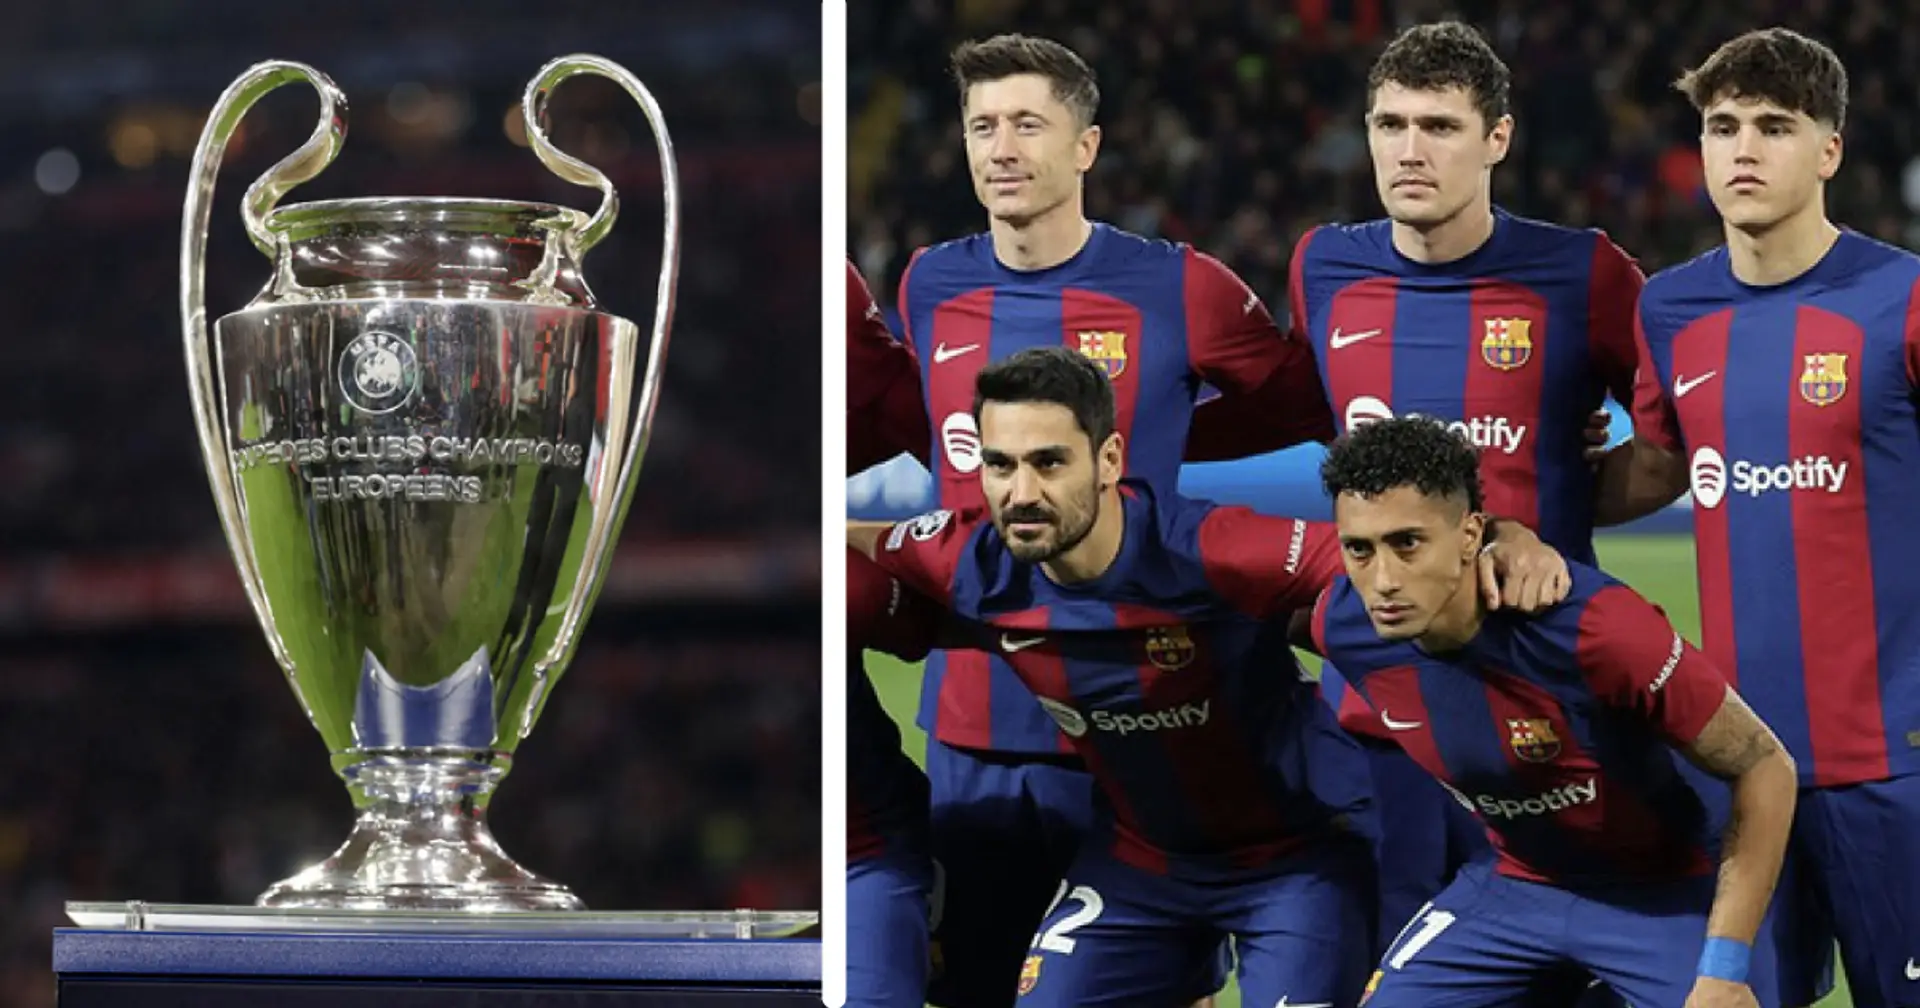 Les adversaires préférés et redoutés des joueurs du Barça en Ligue des champions dévoilés